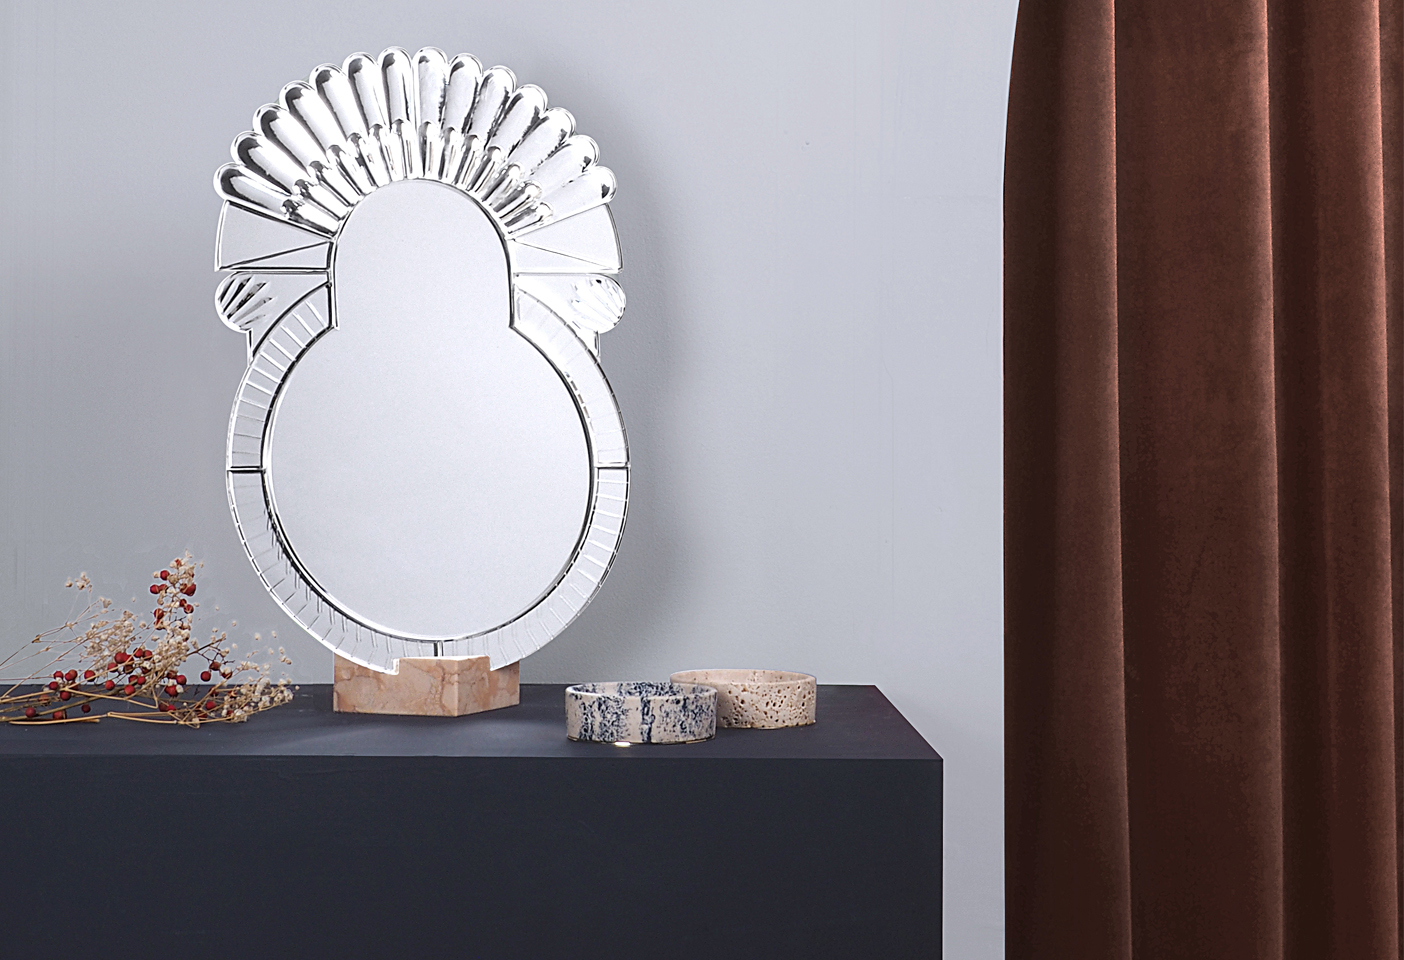 The Elemento solid glass mirror follows on from Nikolai's Scena collection. Photo c/o Nikolai Kotlarczyk.